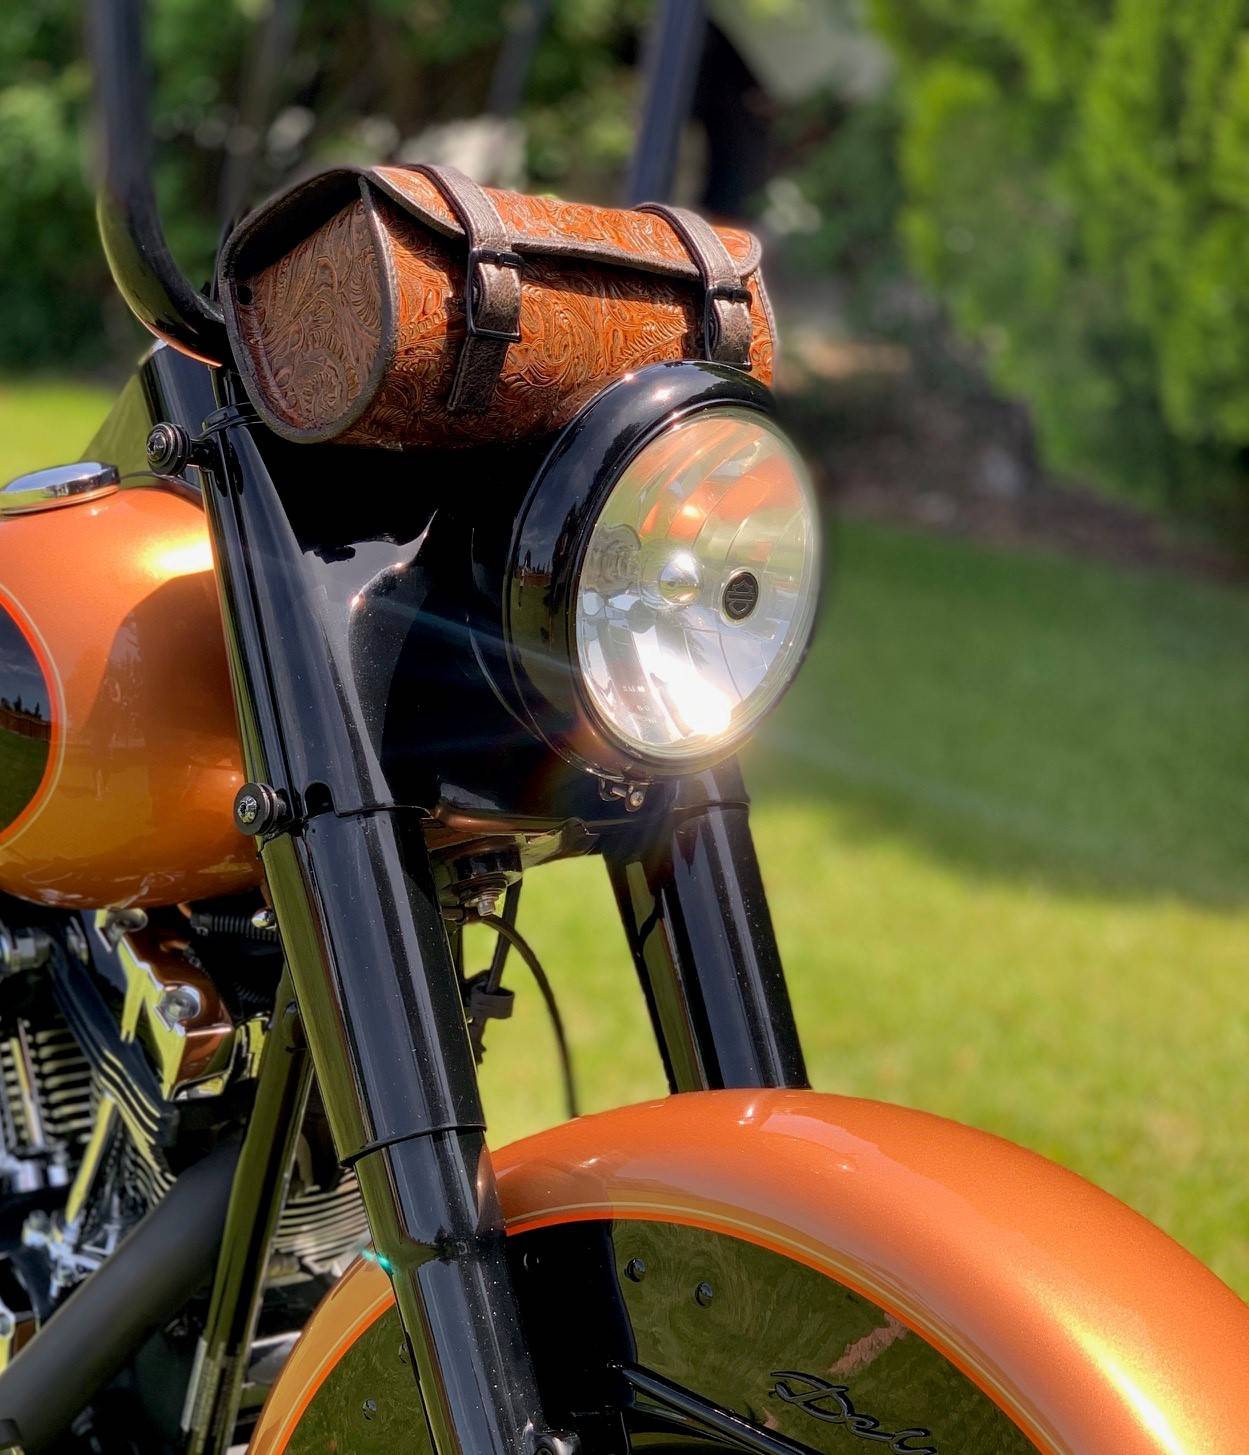 OXMART Motorcycle Saddlebag Universal Fork Roll Barrel Bag Black Leather Tool Bags for Harley Yamaha Suzuki Kawasaki 